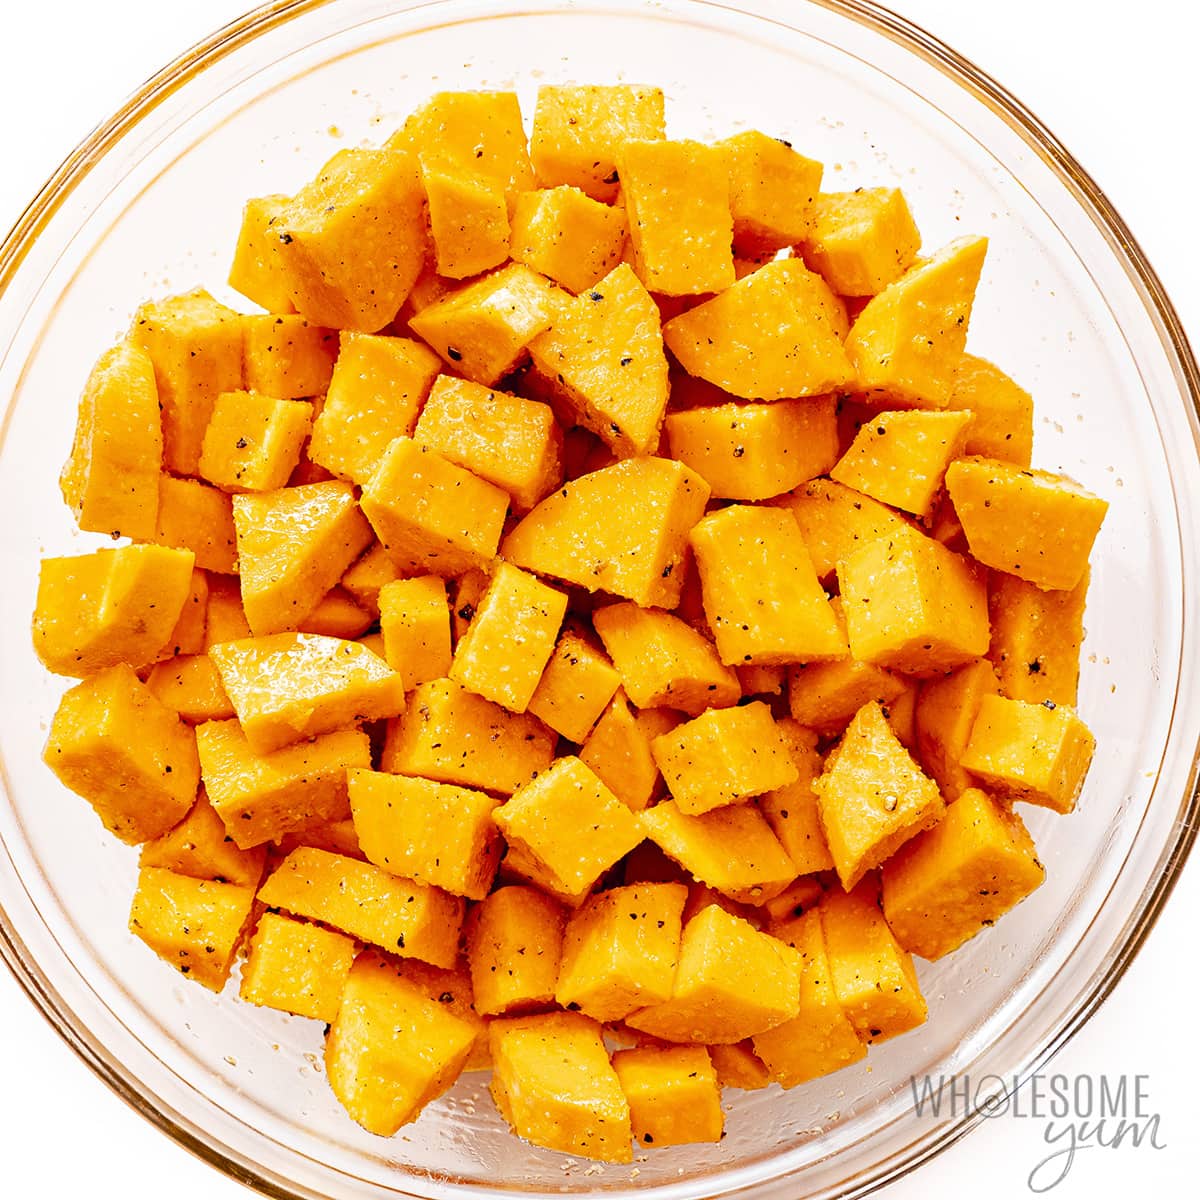 Sweet potato cubes seasoned in a bowl.